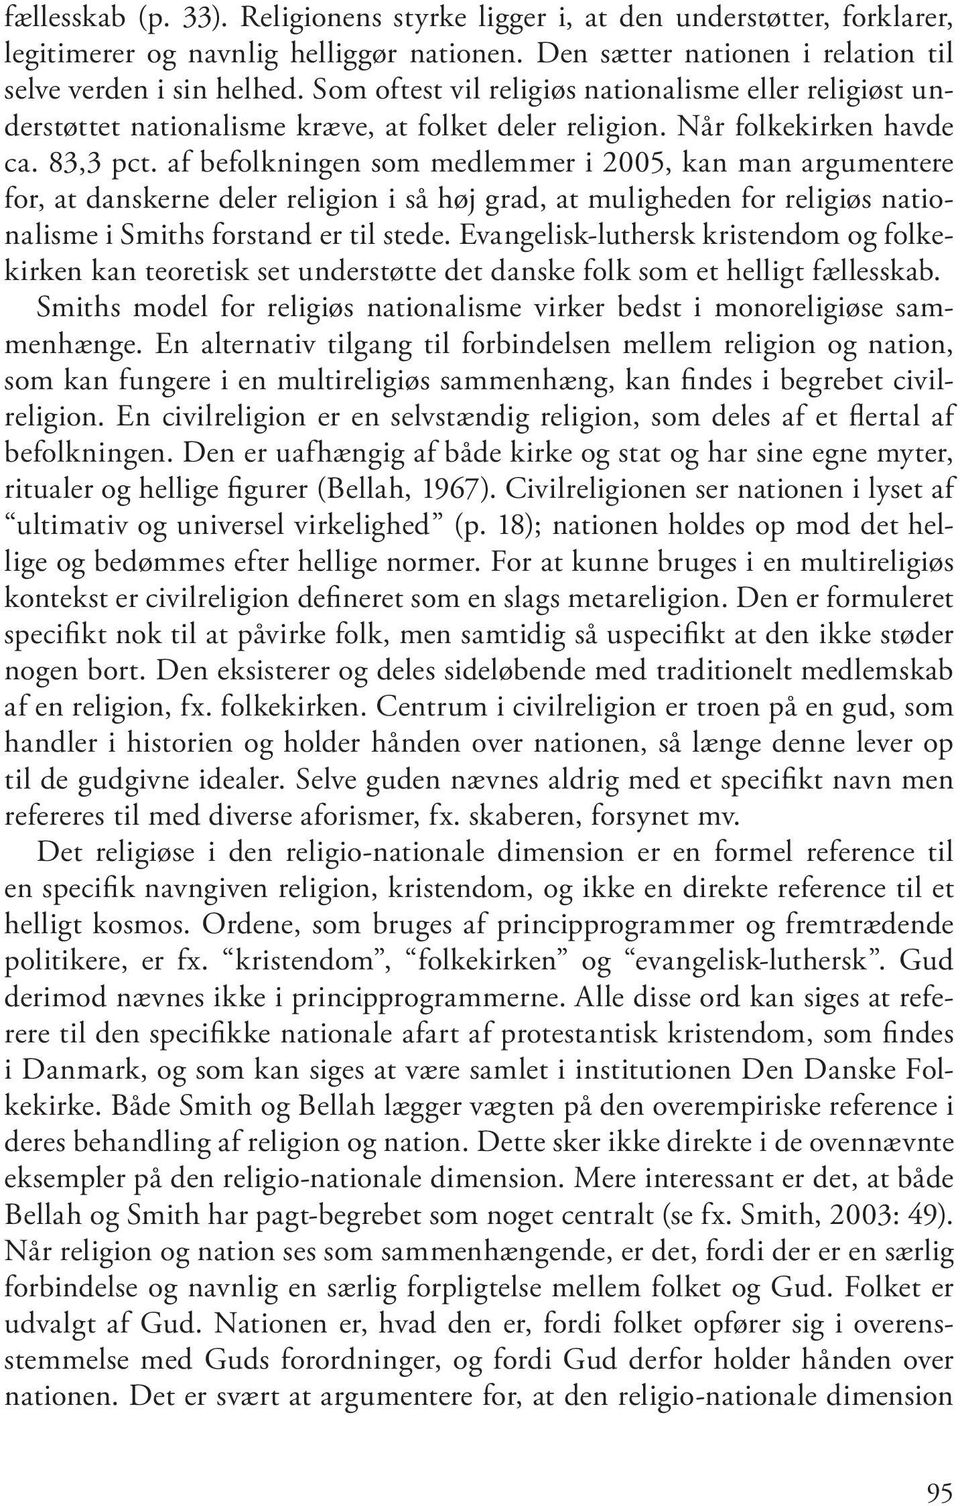 af befolkningen som medlemmer i 2005, kan man argumentere for, at danskerne deler religion i så høj grad, at muligheden for religiøs nationalisme i Smiths forstand er til stede.